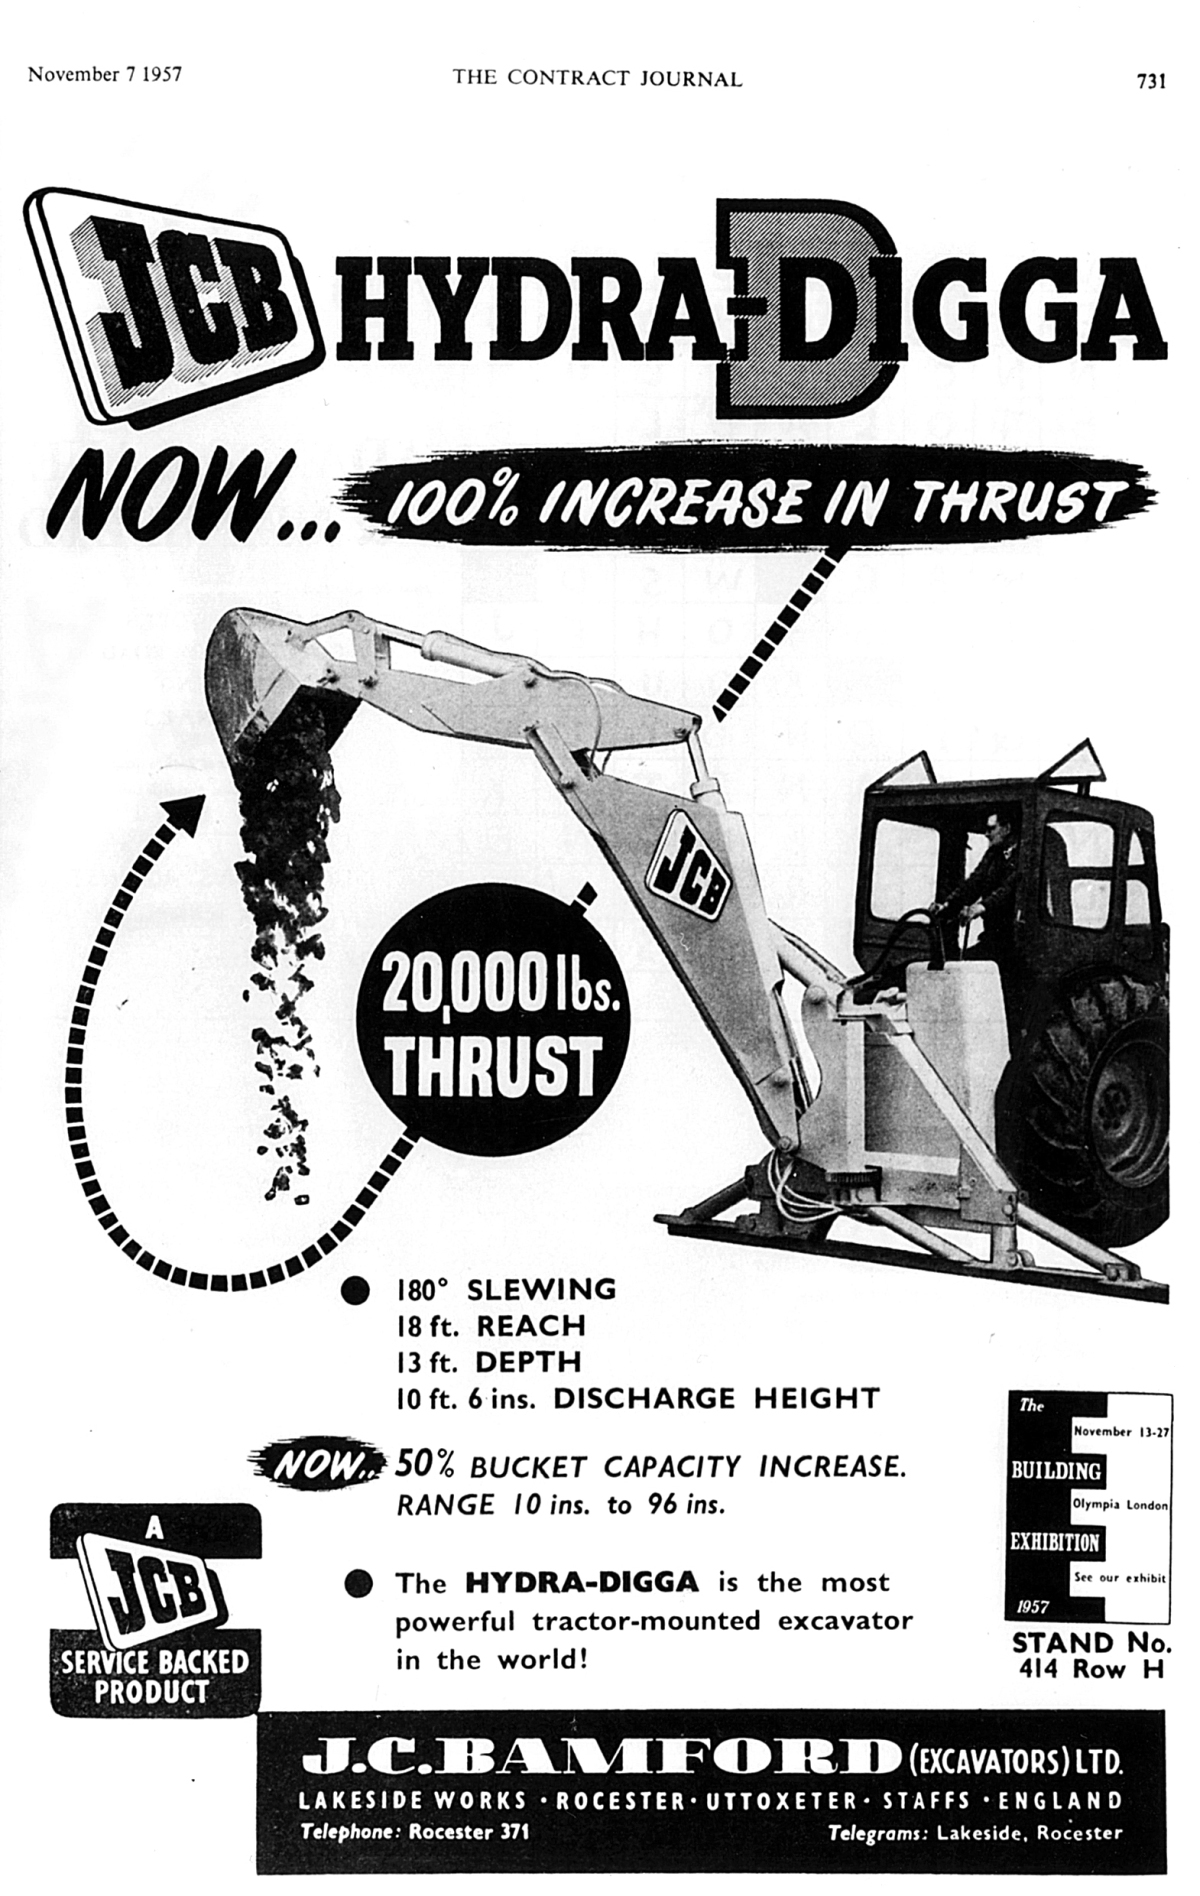 Werbeanzeige aus dem Jahr 1957 für den Hydra-Digga.